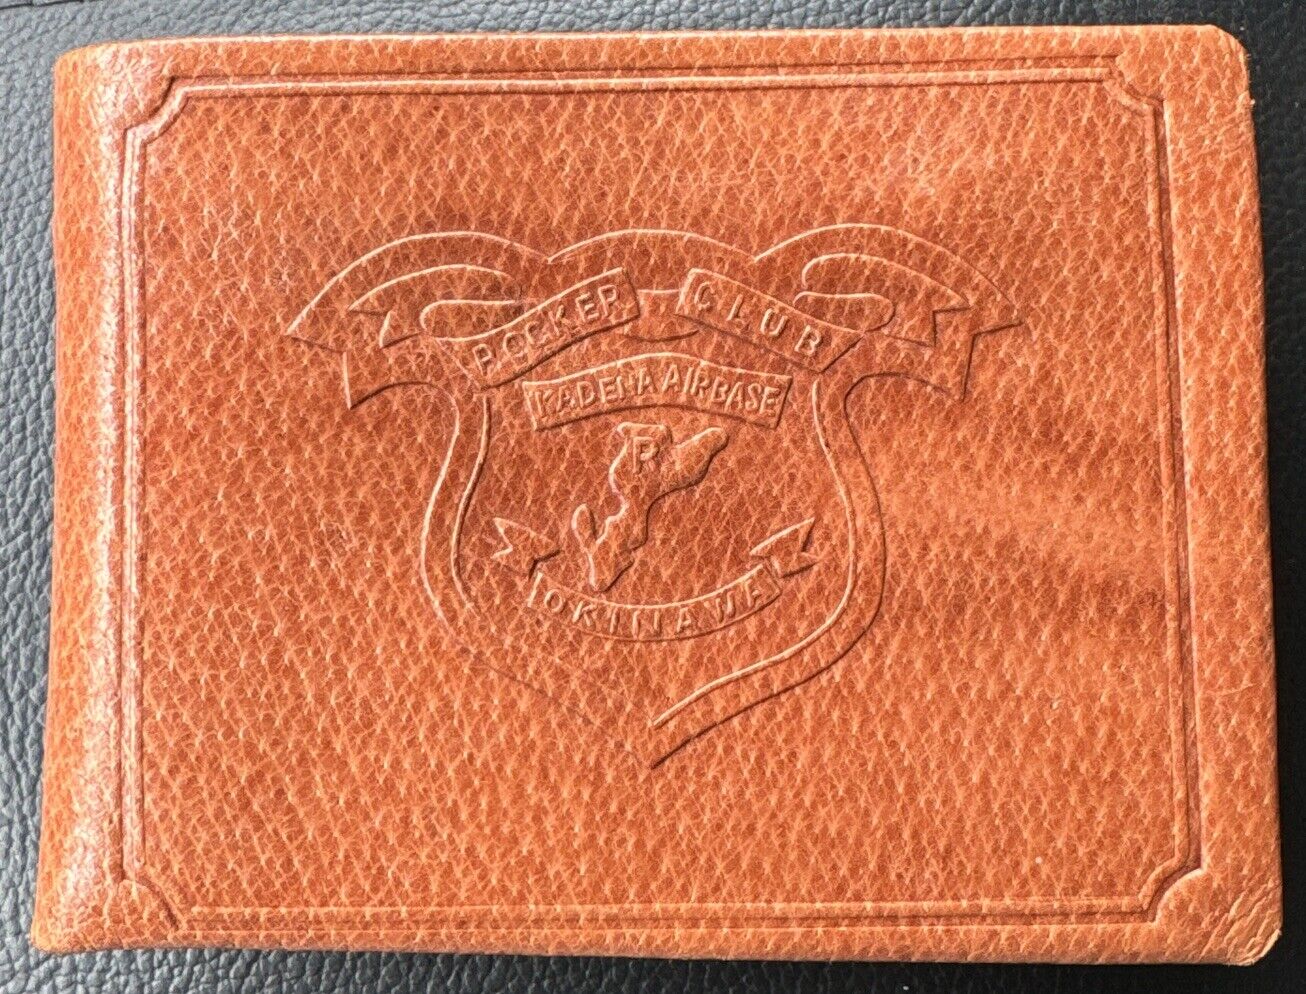 Kadena Air Base “Rocker Club” Okinawa Genuine Pigskin Leather Wallet